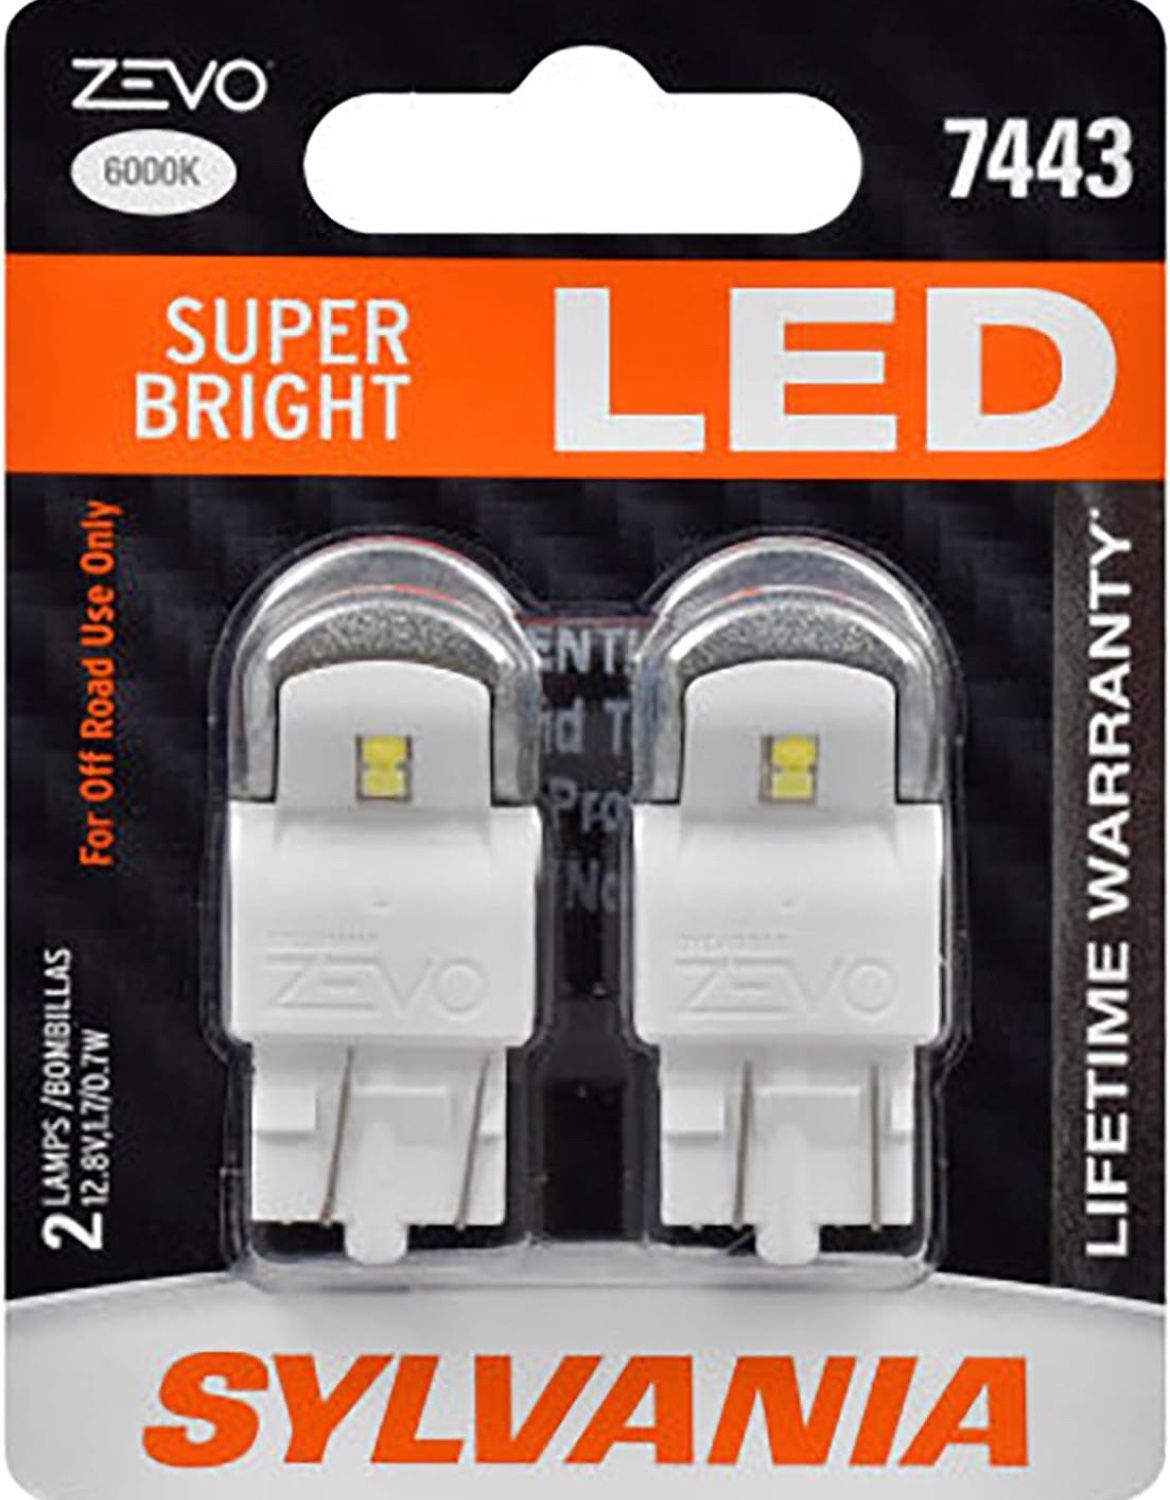 Sylvania Zevo Super Bright LED 7443 White